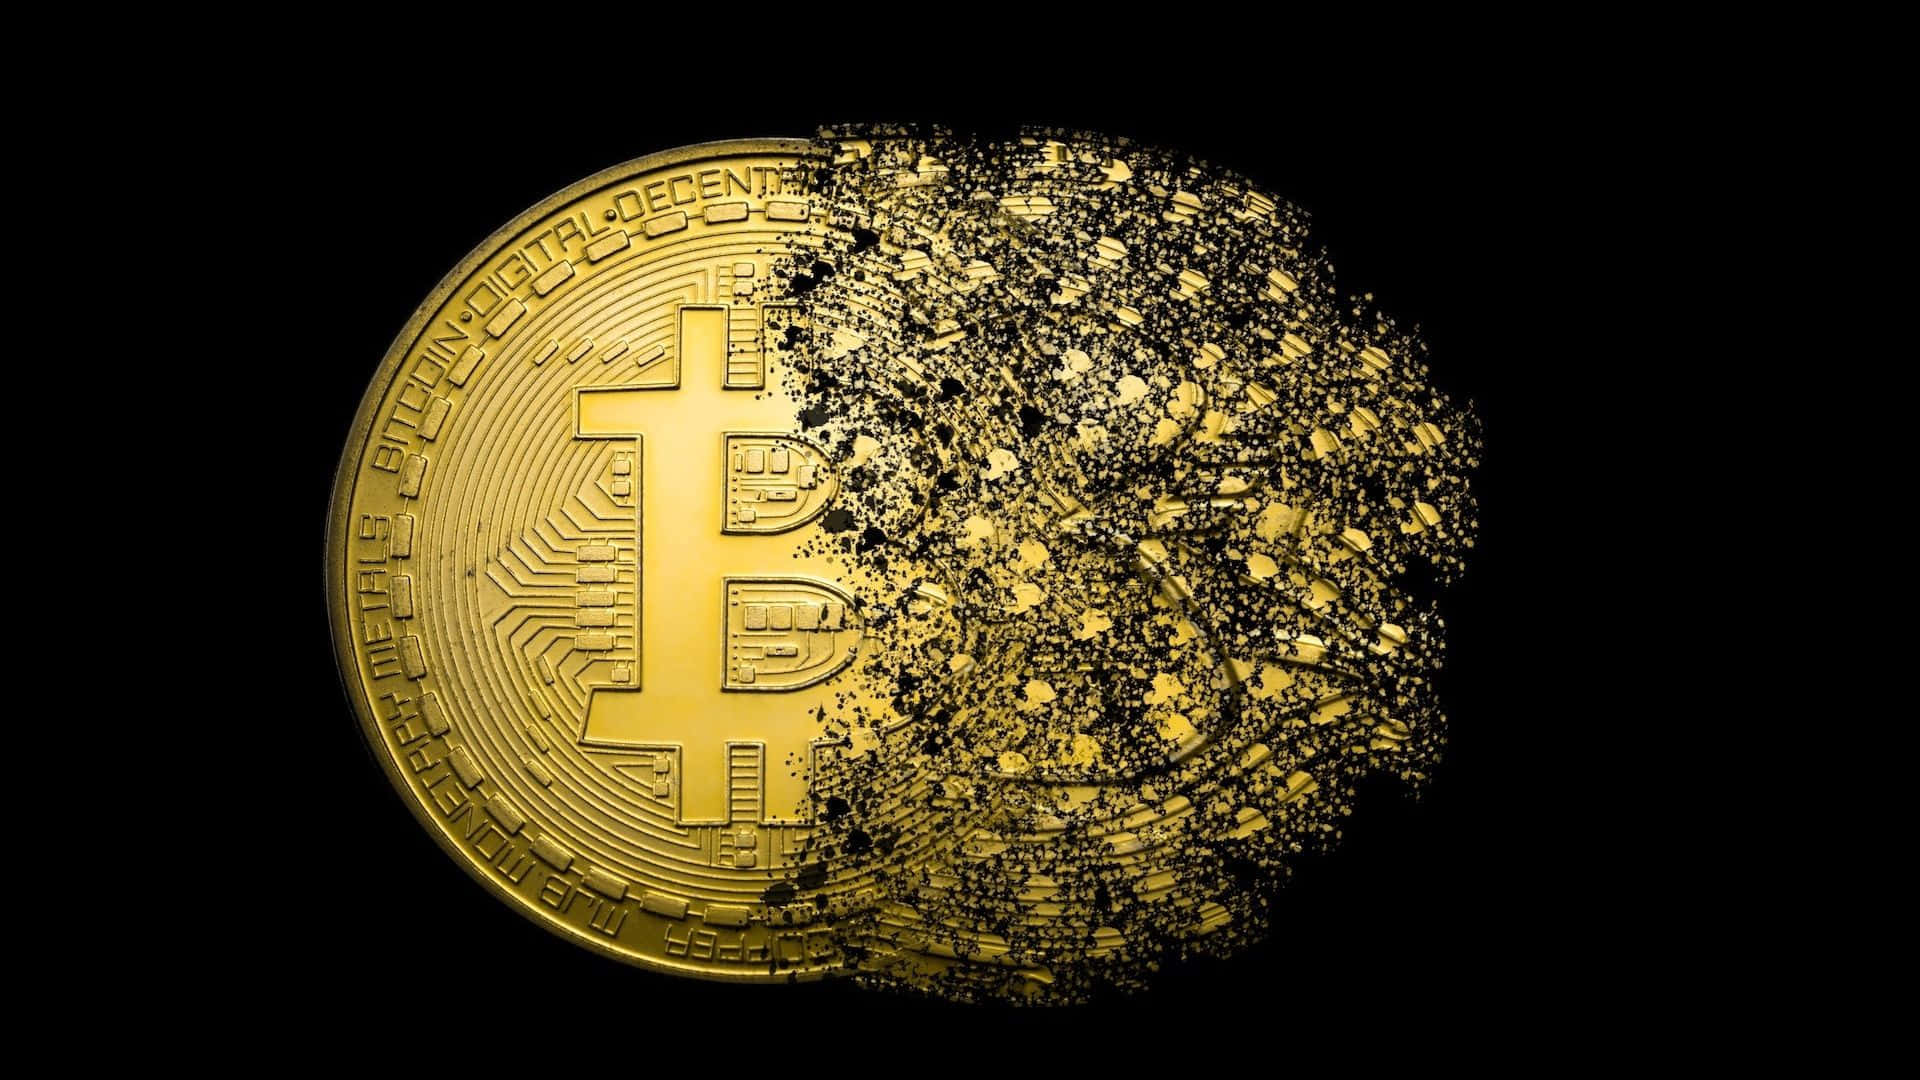 Umamoeda De Ouro Bitcoin É Exibida Em Um Fundo Preto. Papel de Parede